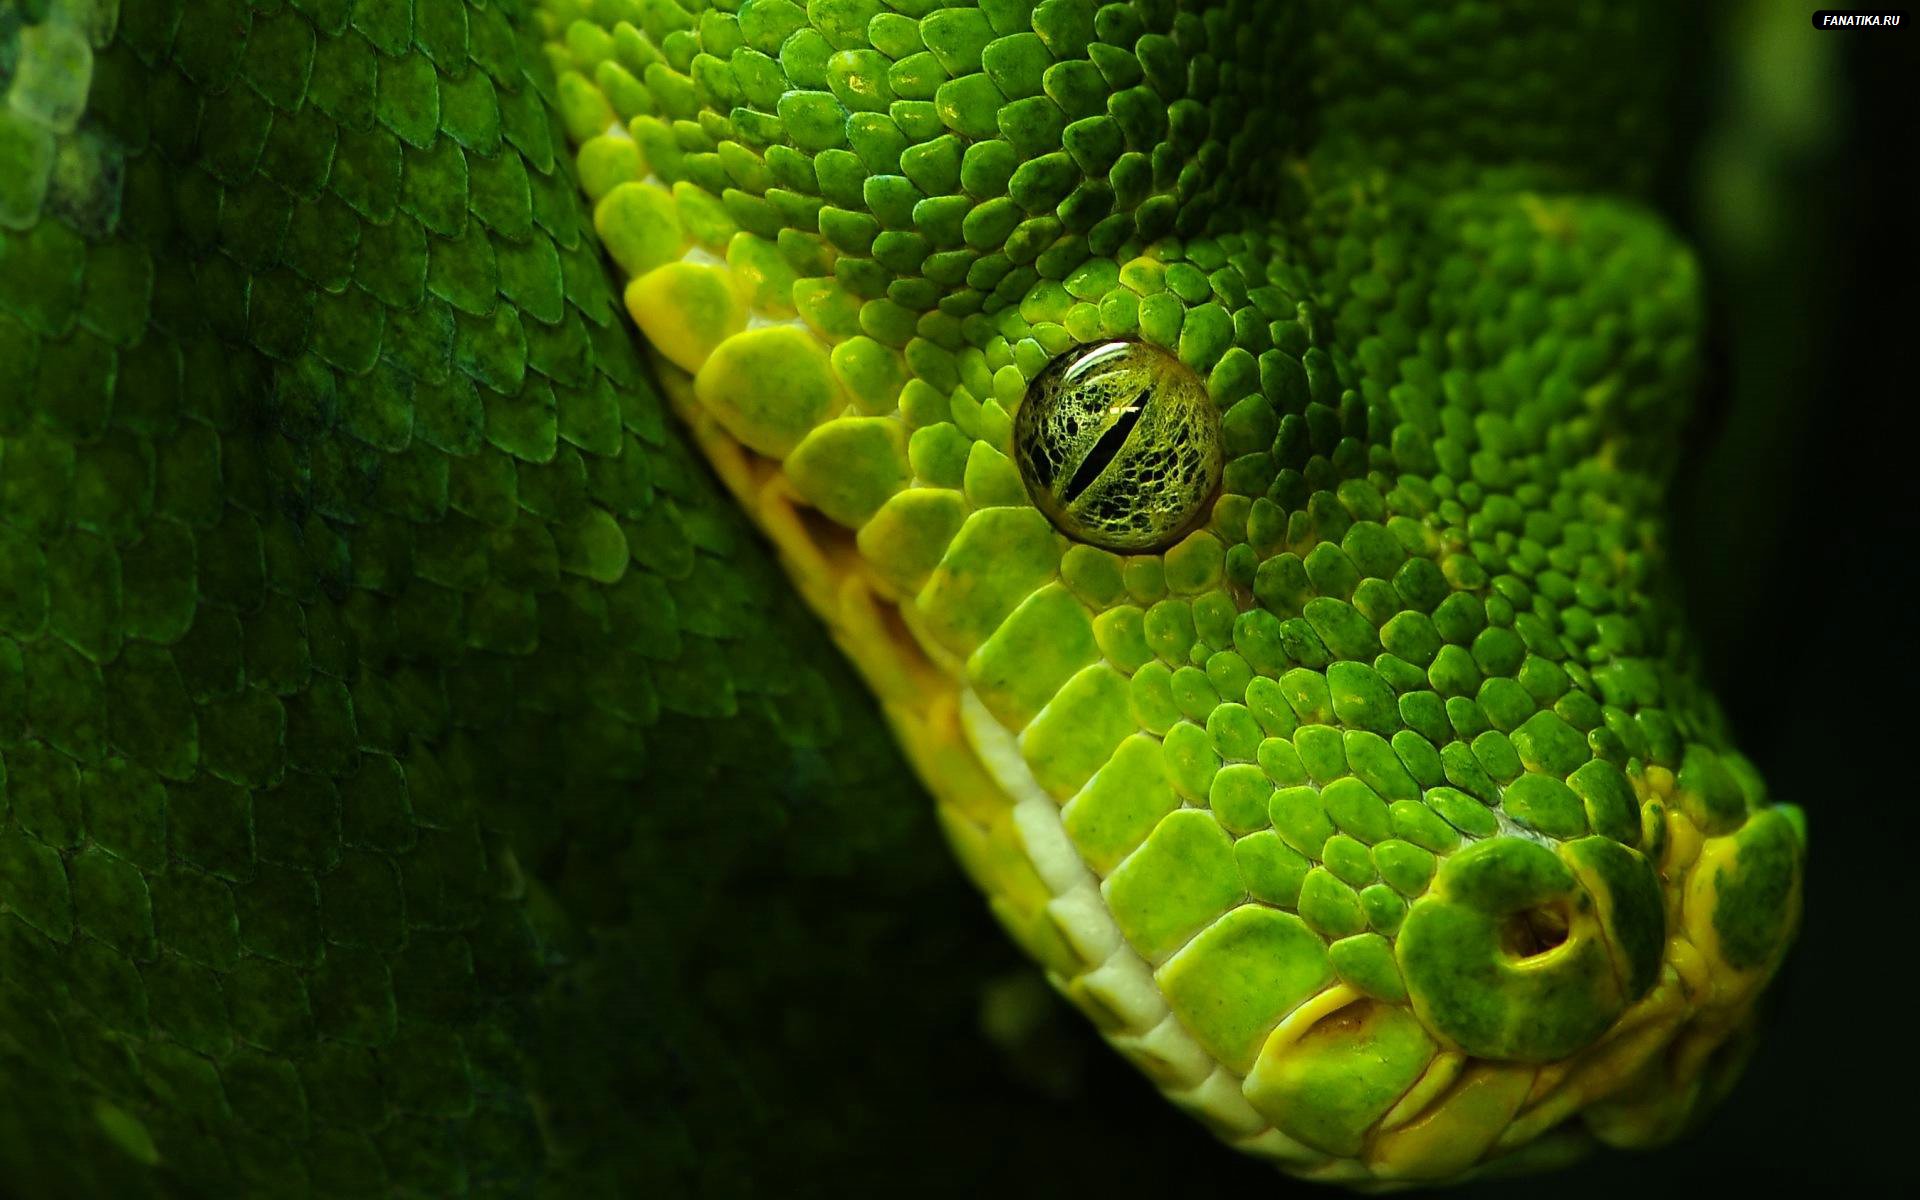 Animal High Wallpaper Resolution Image Python Snake